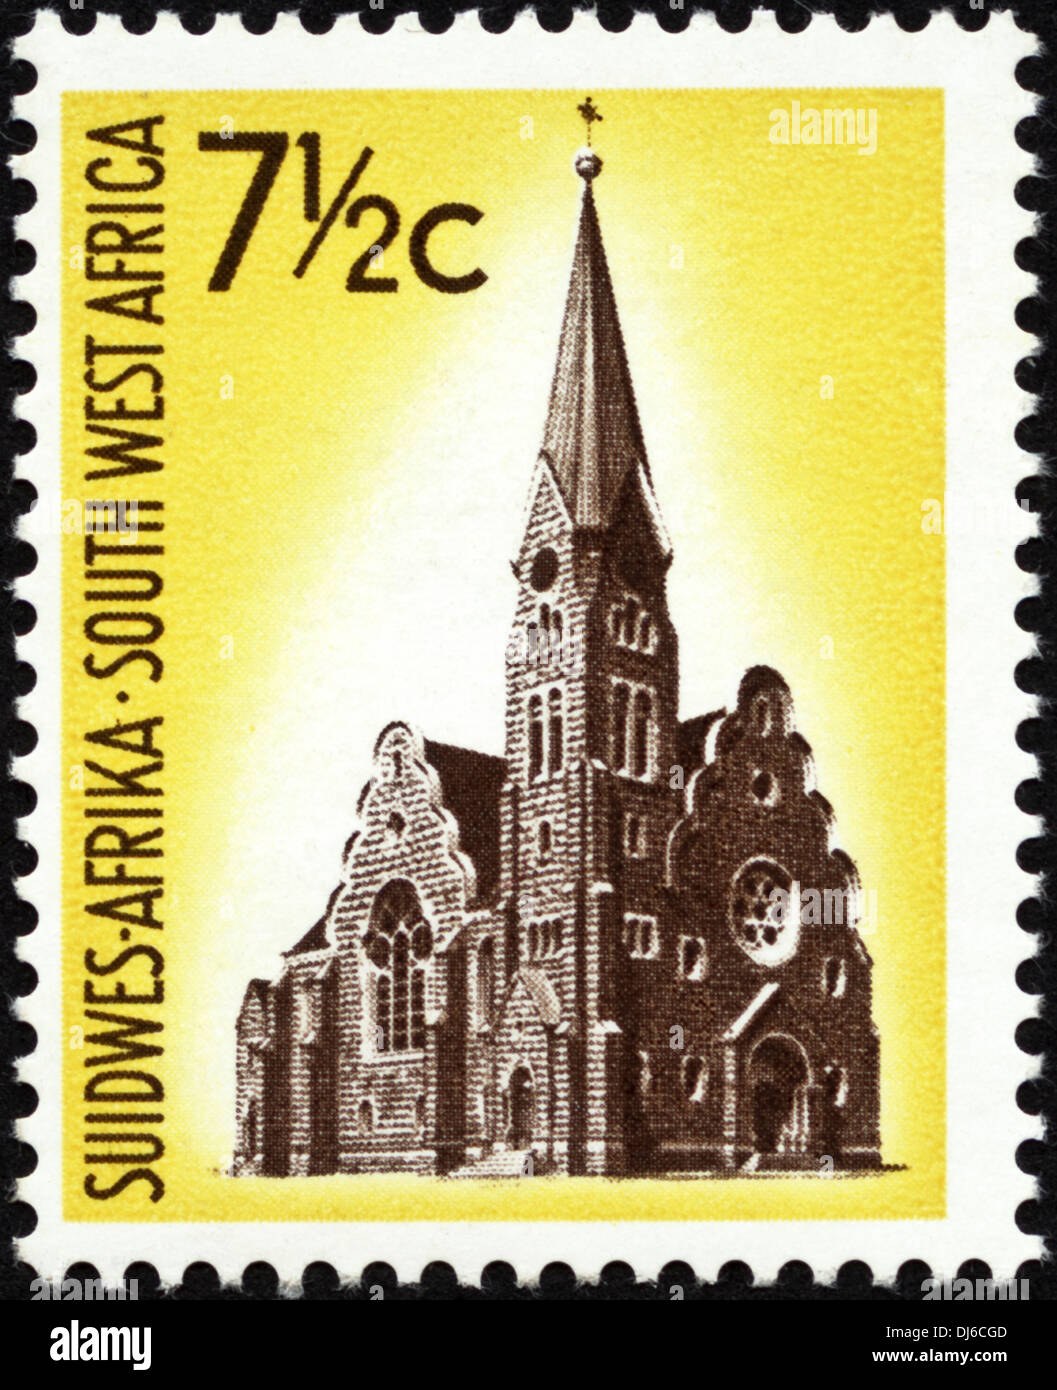 Francobollo Africa del sud-ovest 7½c dotate di chiesa con la guglia datata 1961 Foto Stock